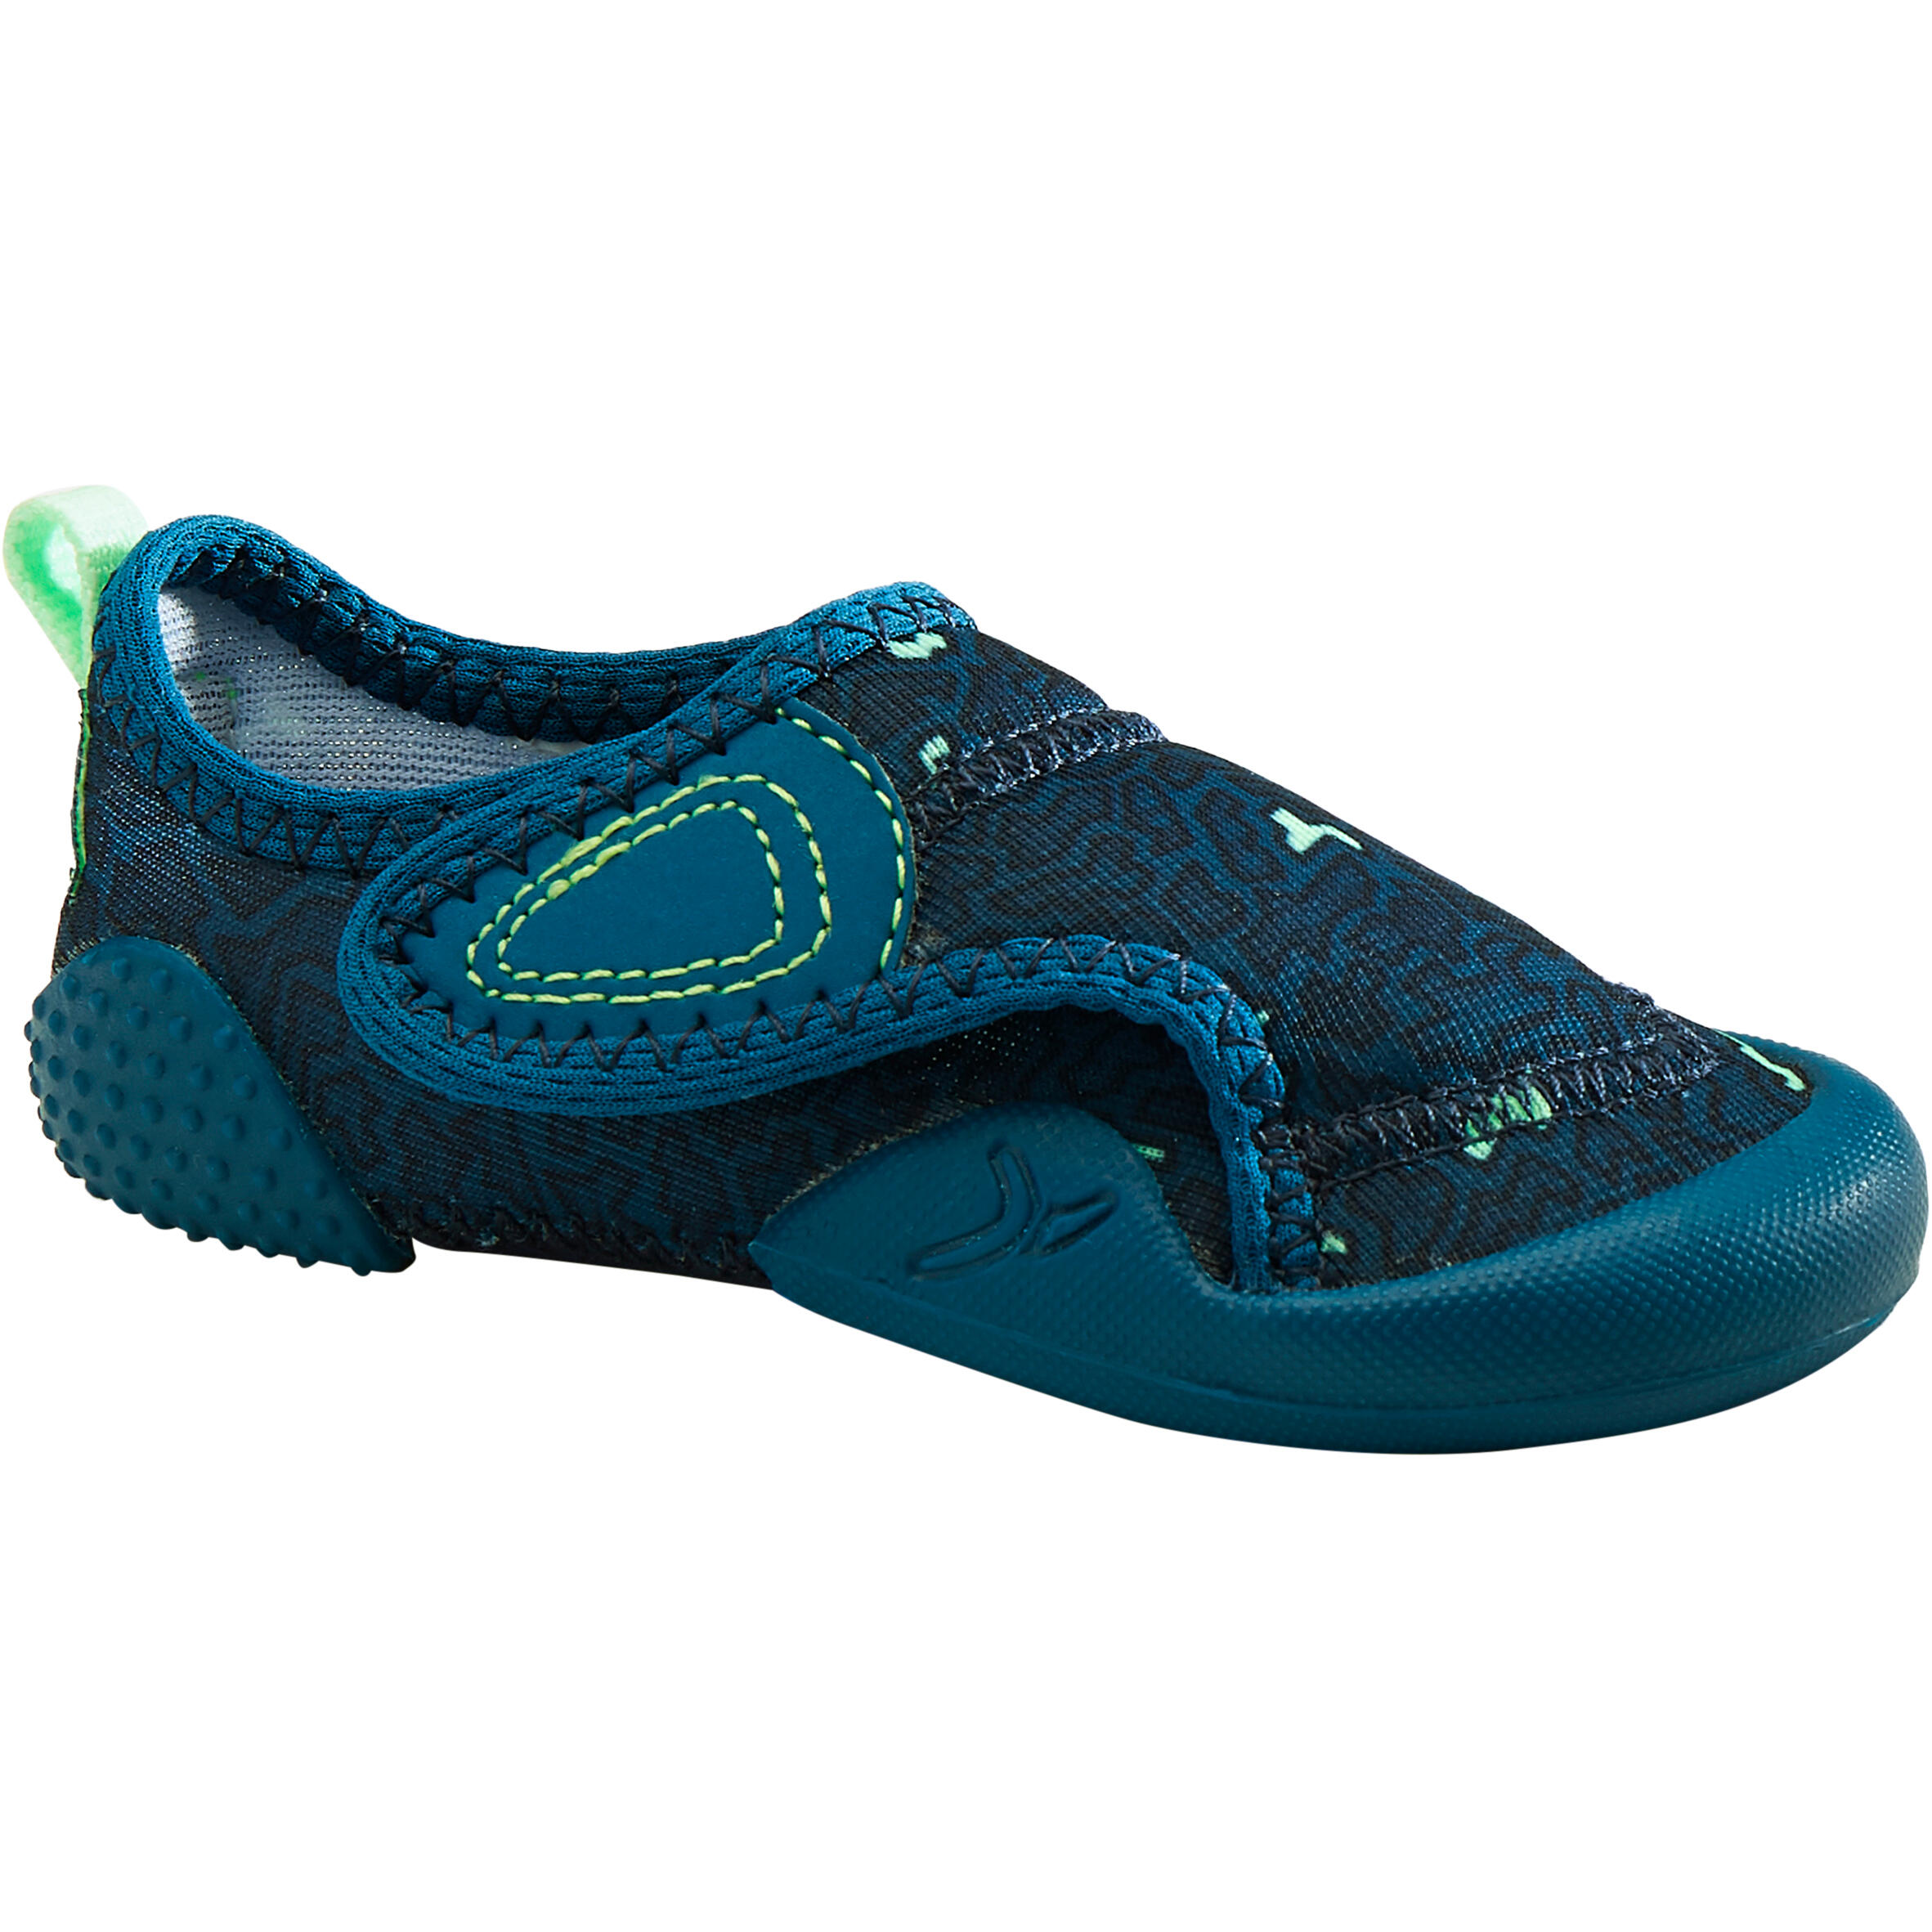 嬰幼兒軟鞋580 Baby Light - 藍色印花 